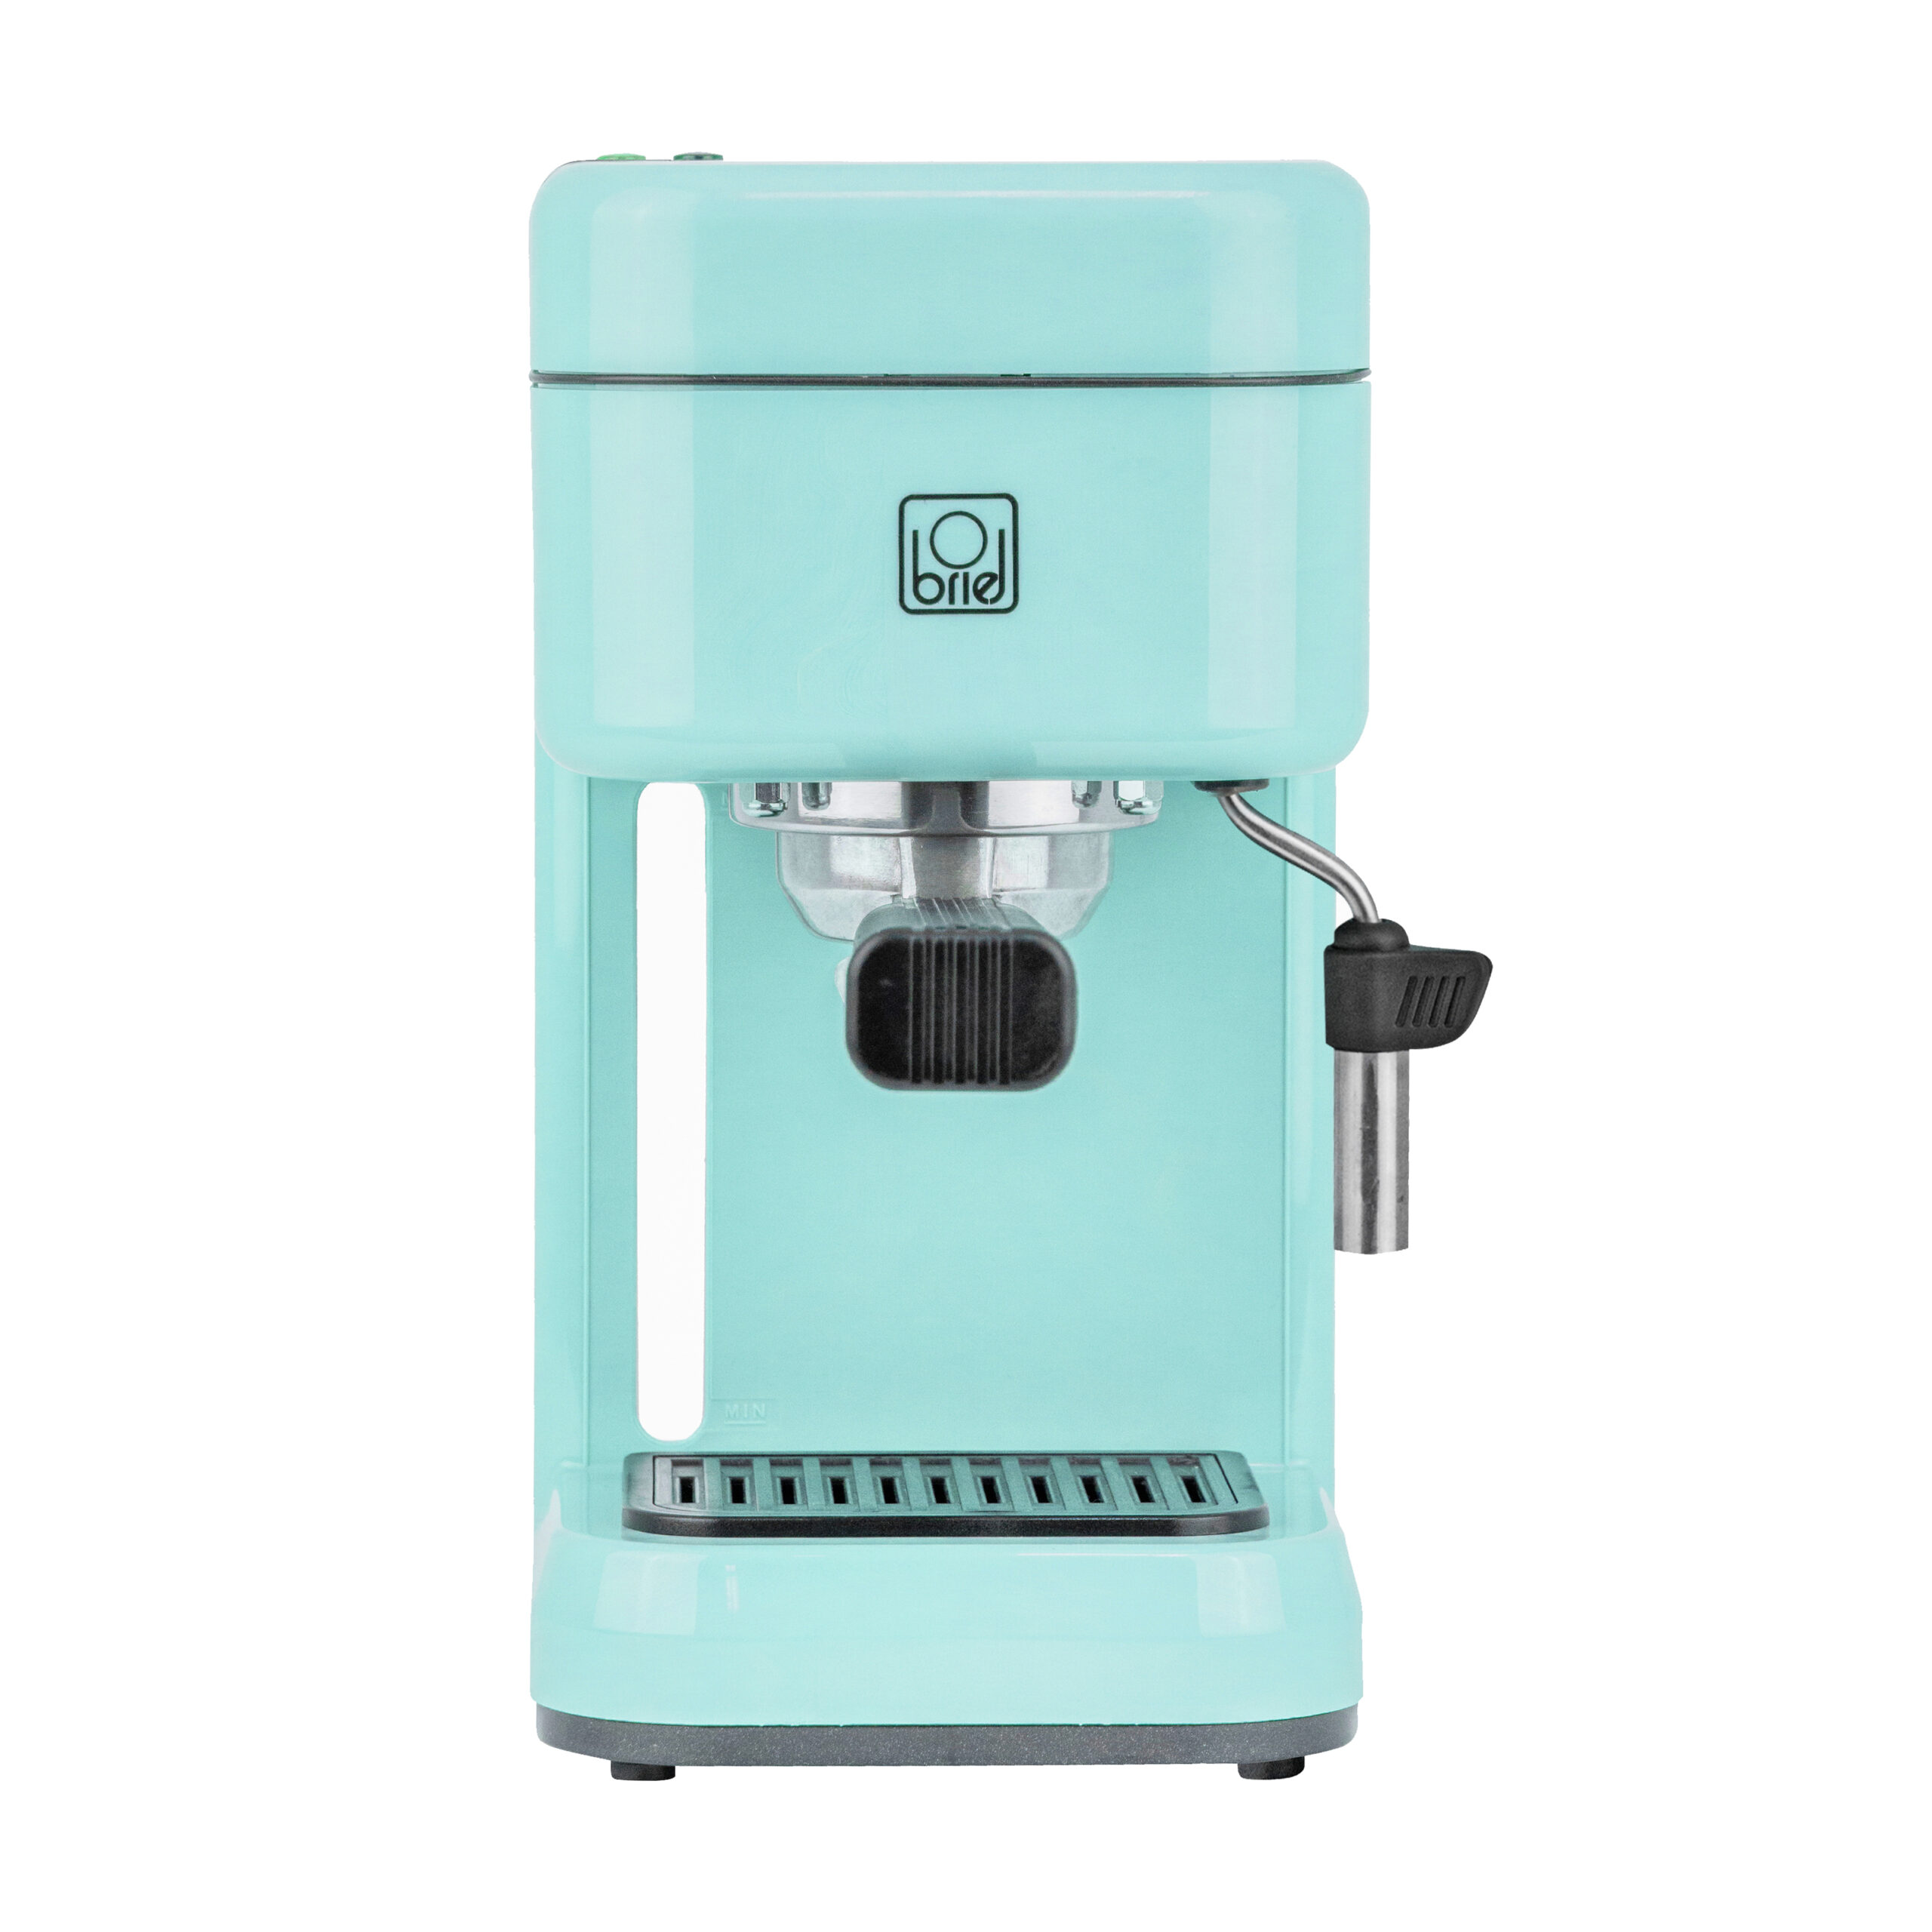 Maquina-cafe-espresso-B14-BLUE-2-scaled-1.jpg